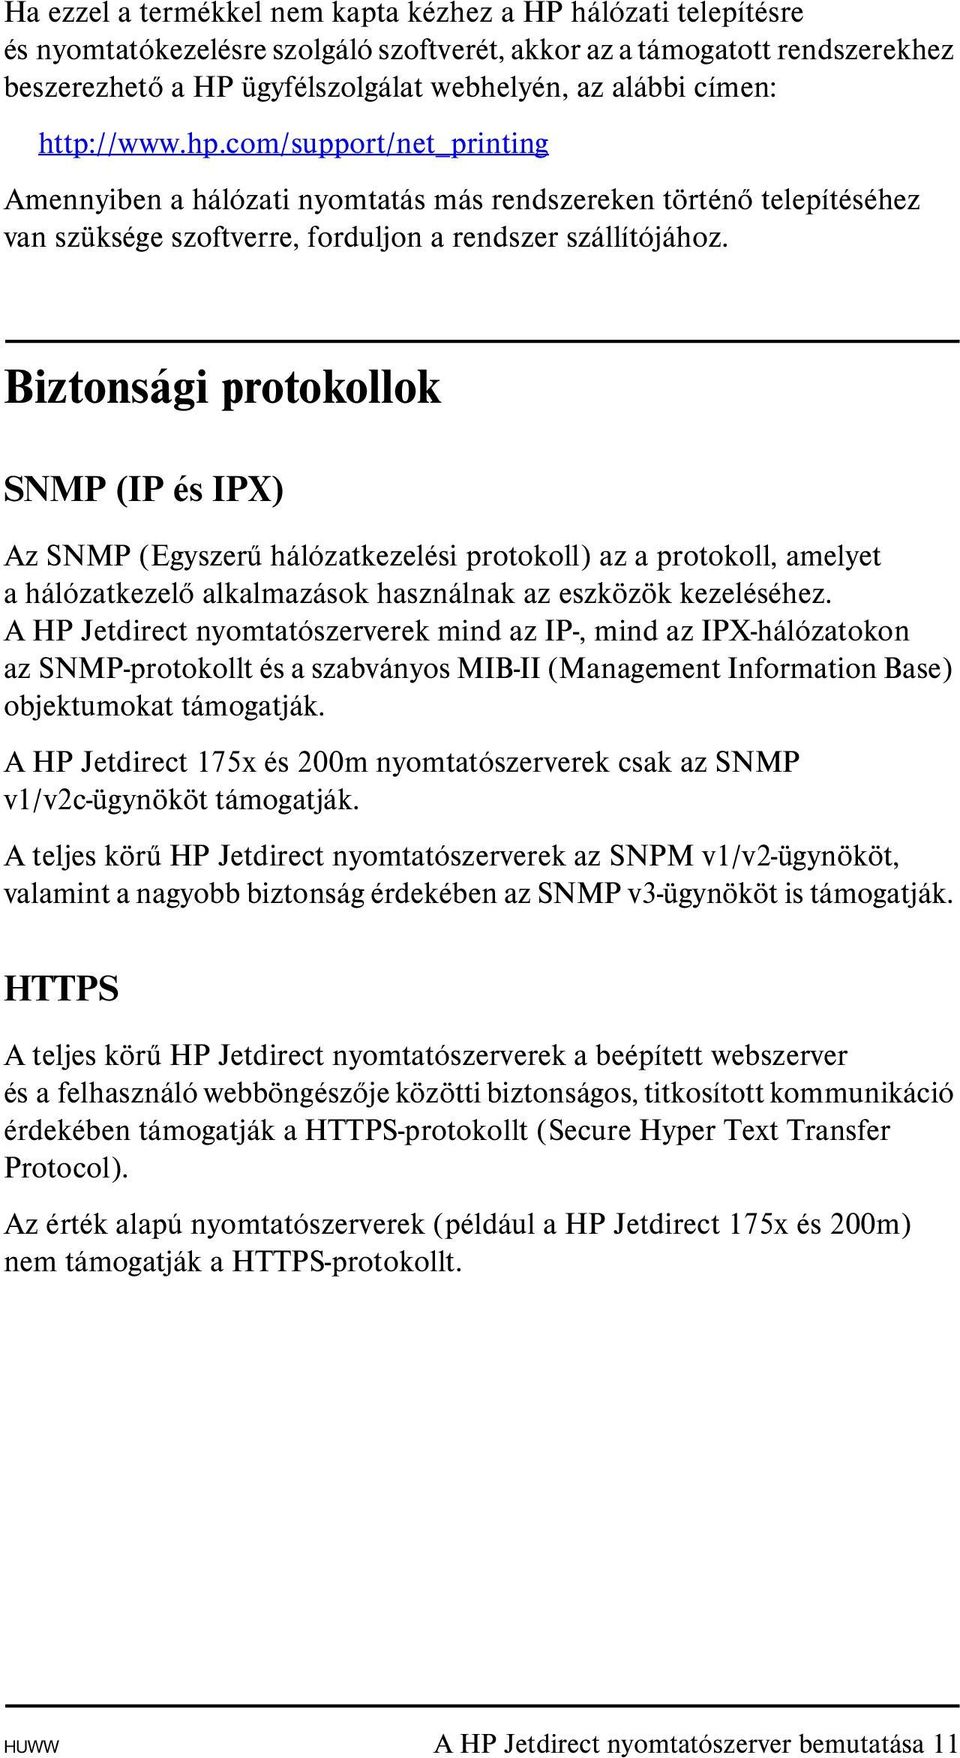 Biztonsági protokollok SNMP (IP és IPX) Az SNMP (Egyszerű hálózatkezelési protokoll) az a protokoll, amelyet a hálózatkezelő alkalmazások használnak az eszközök kezeléséhez.